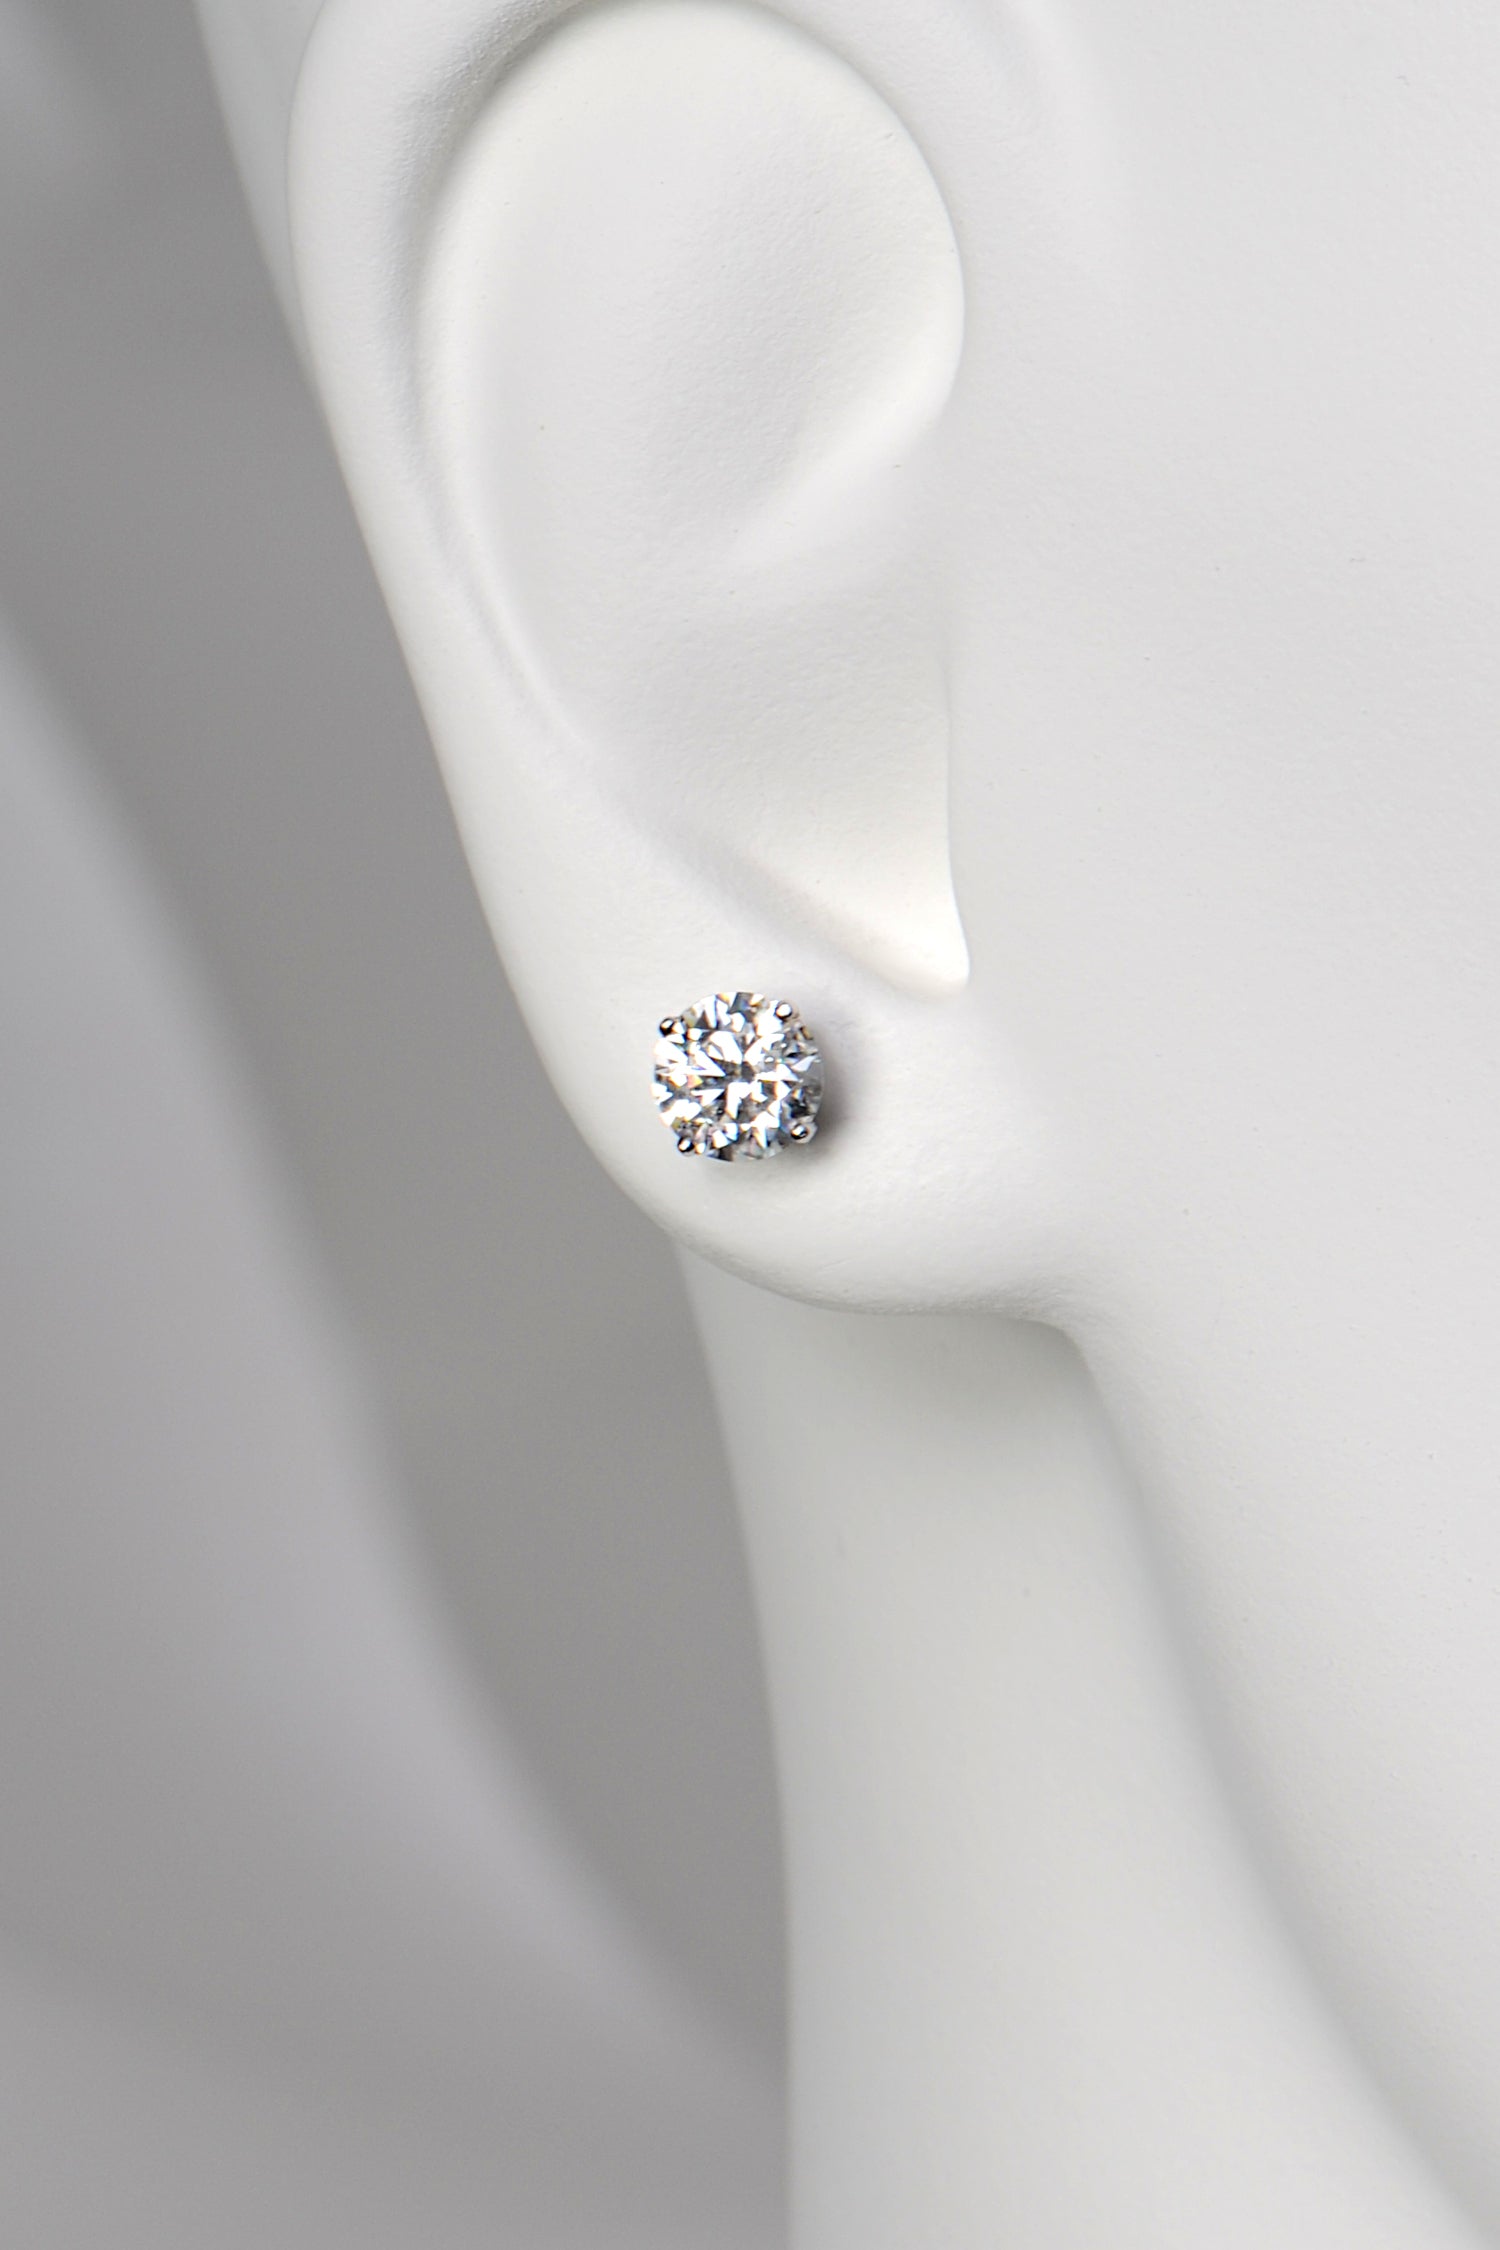 one carat size diamond earrings